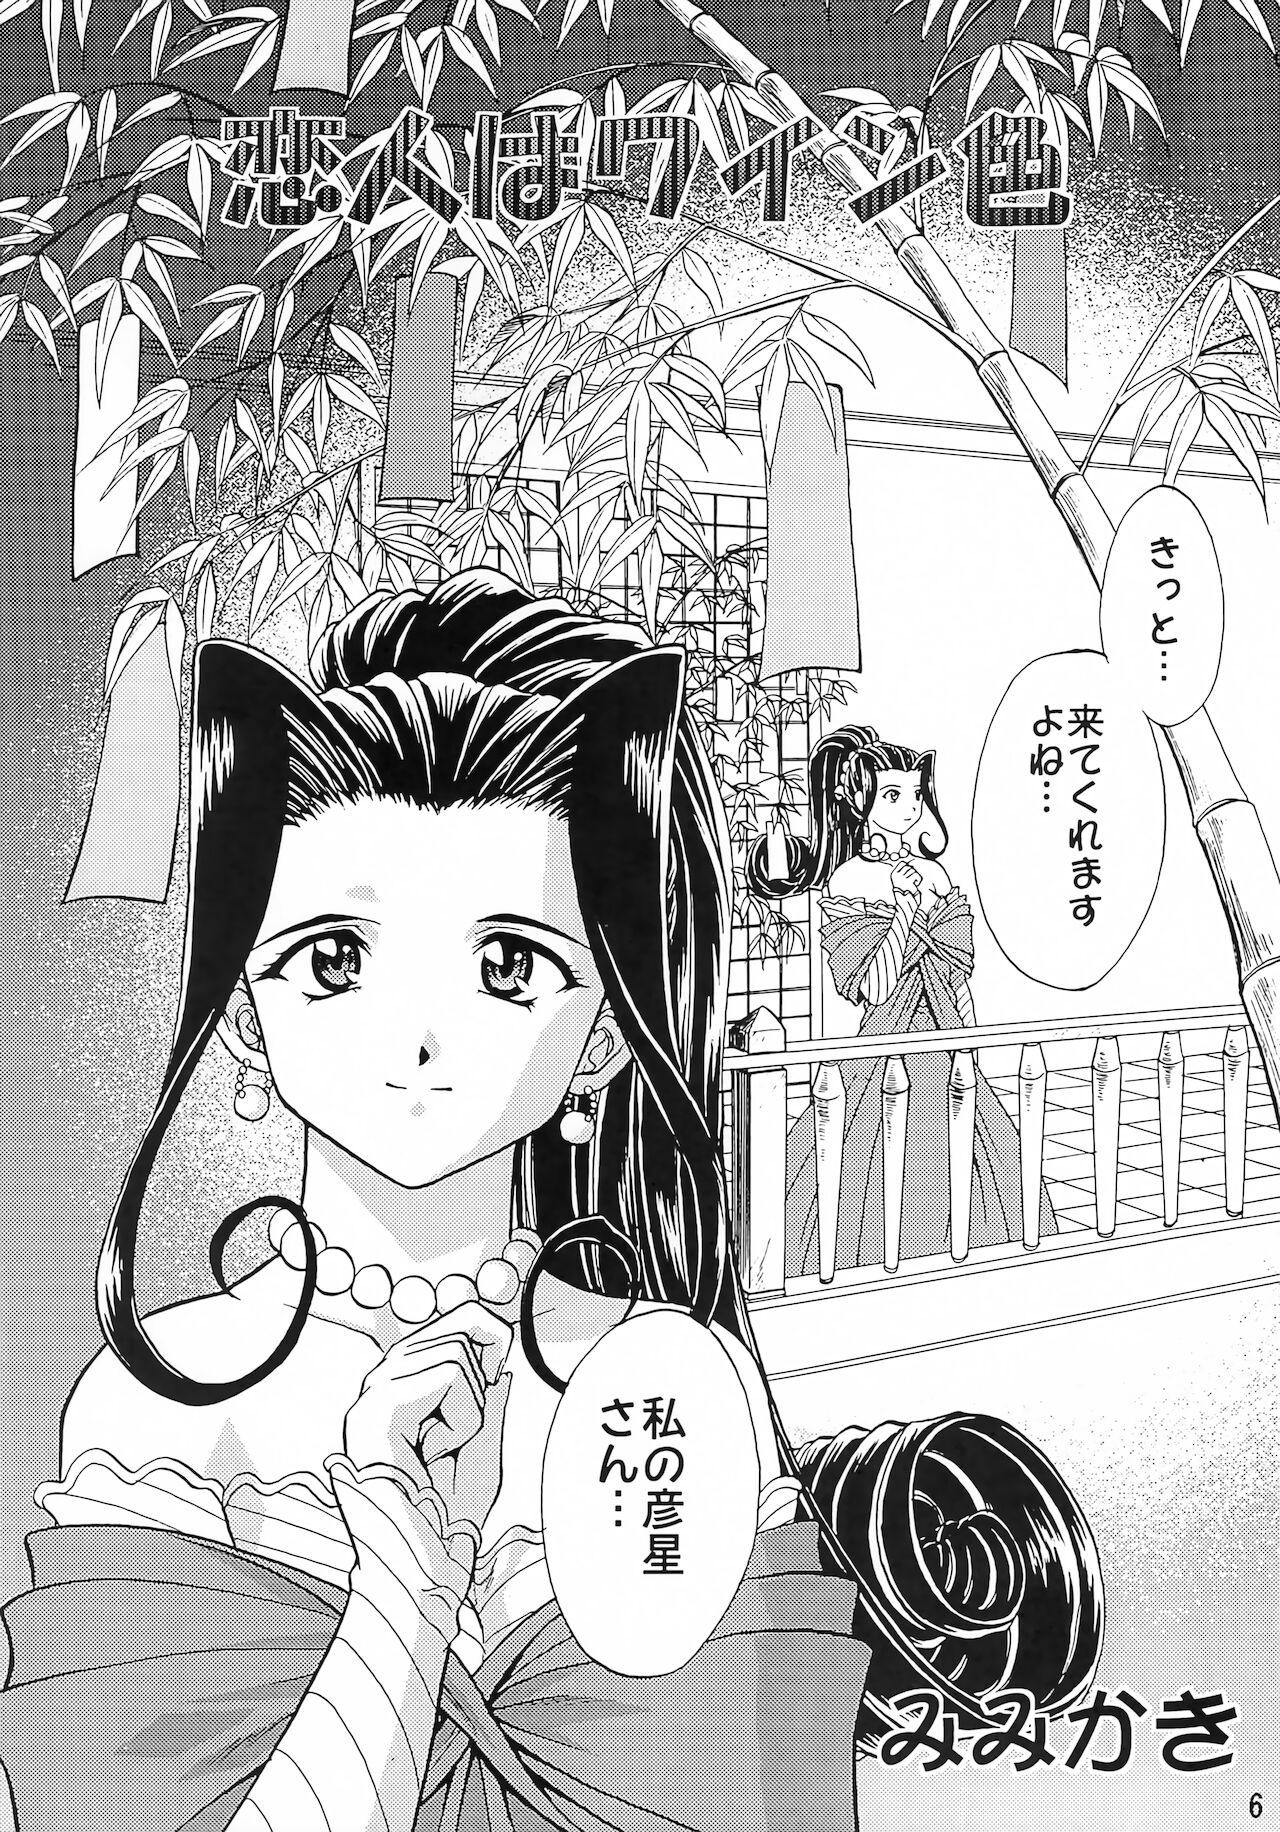 Titten Otome-tachi no Koiuta Go - Sakura taisen | sakura wars Chaturbate - Page 5